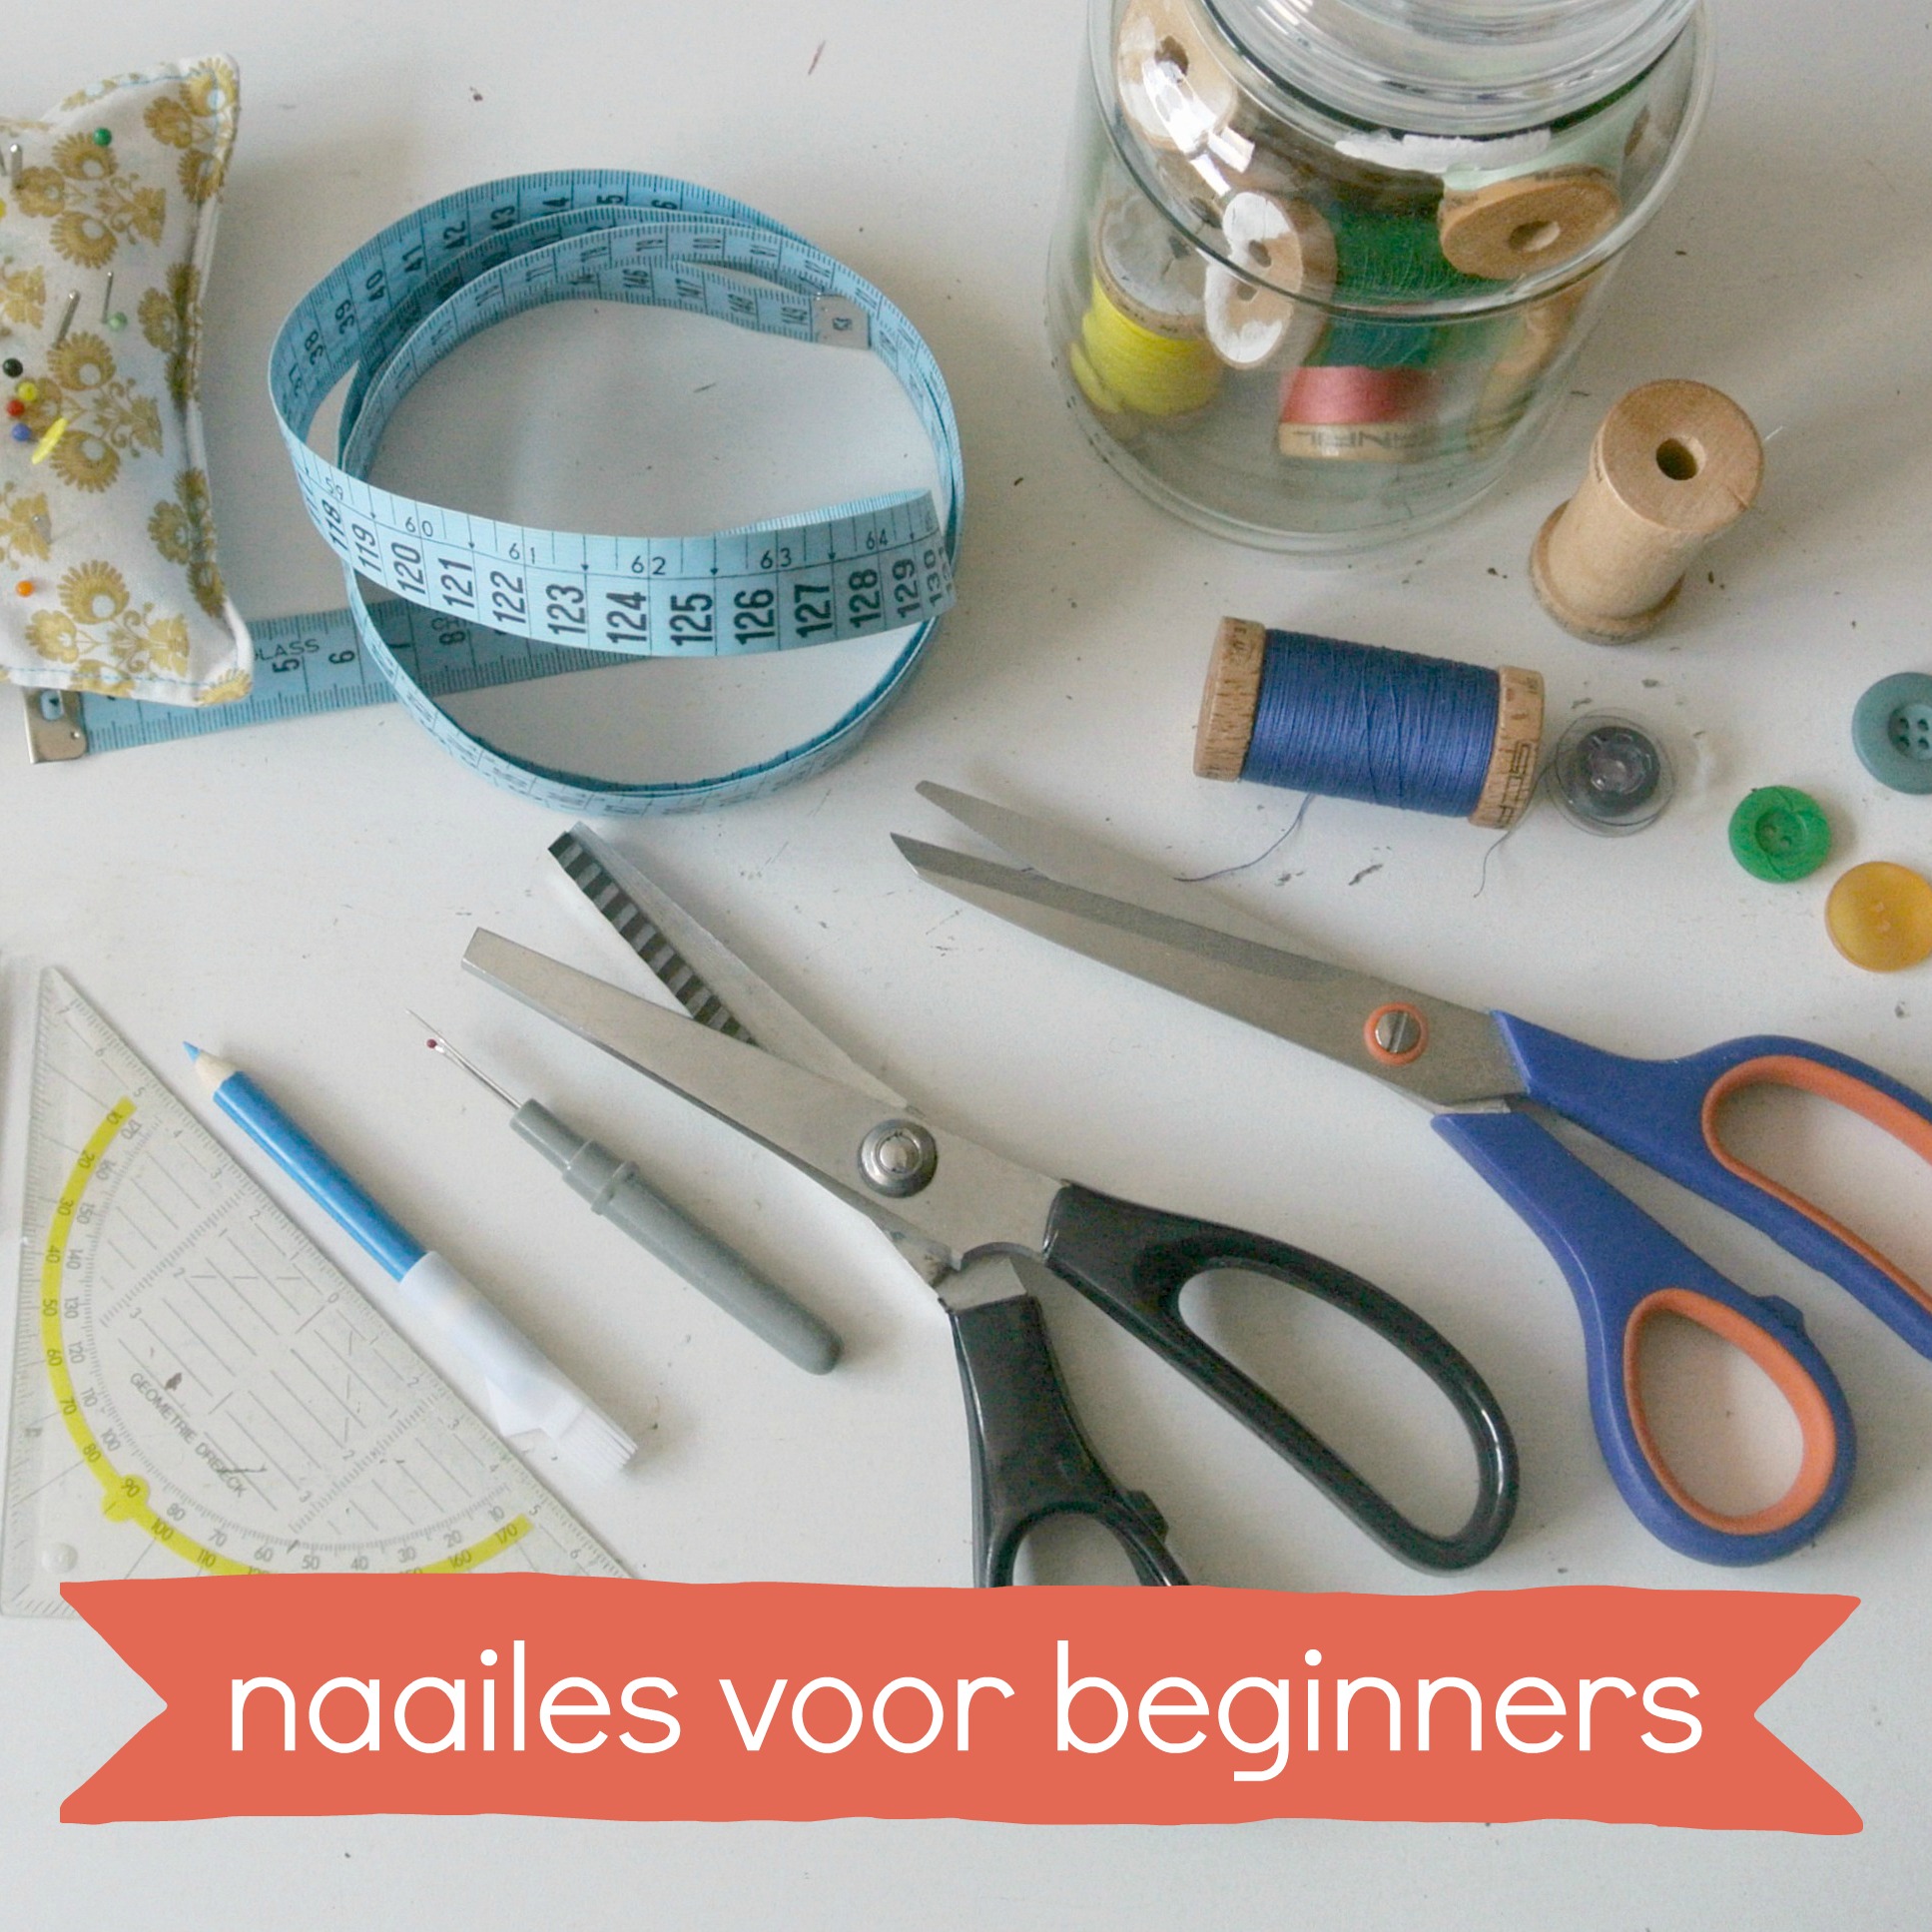 naailes-voor-beginners-button-new